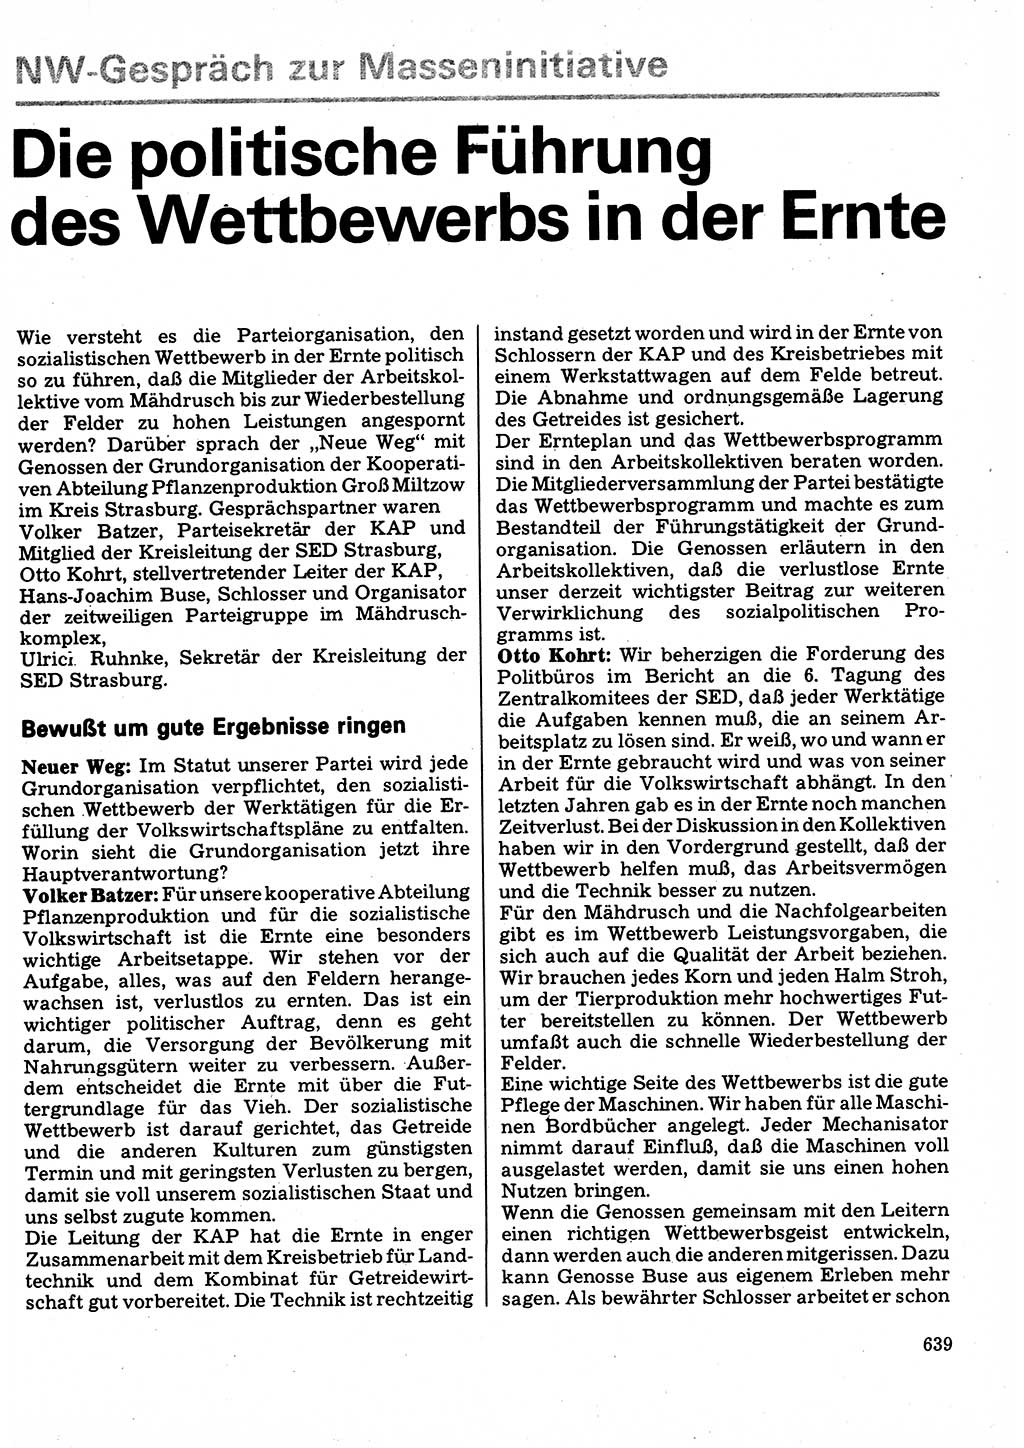 Neuer Weg (NW), Organ des Zentralkomitees (ZK) der SED (Sozialistische Einheitspartei Deutschlands) für Fragen des Parteilebens, 32. Jahrgang [Deutsche Demokratische Republik (DDR)] 1977, Seite 639 (NW ZK SED DDR 1977, S. 639)